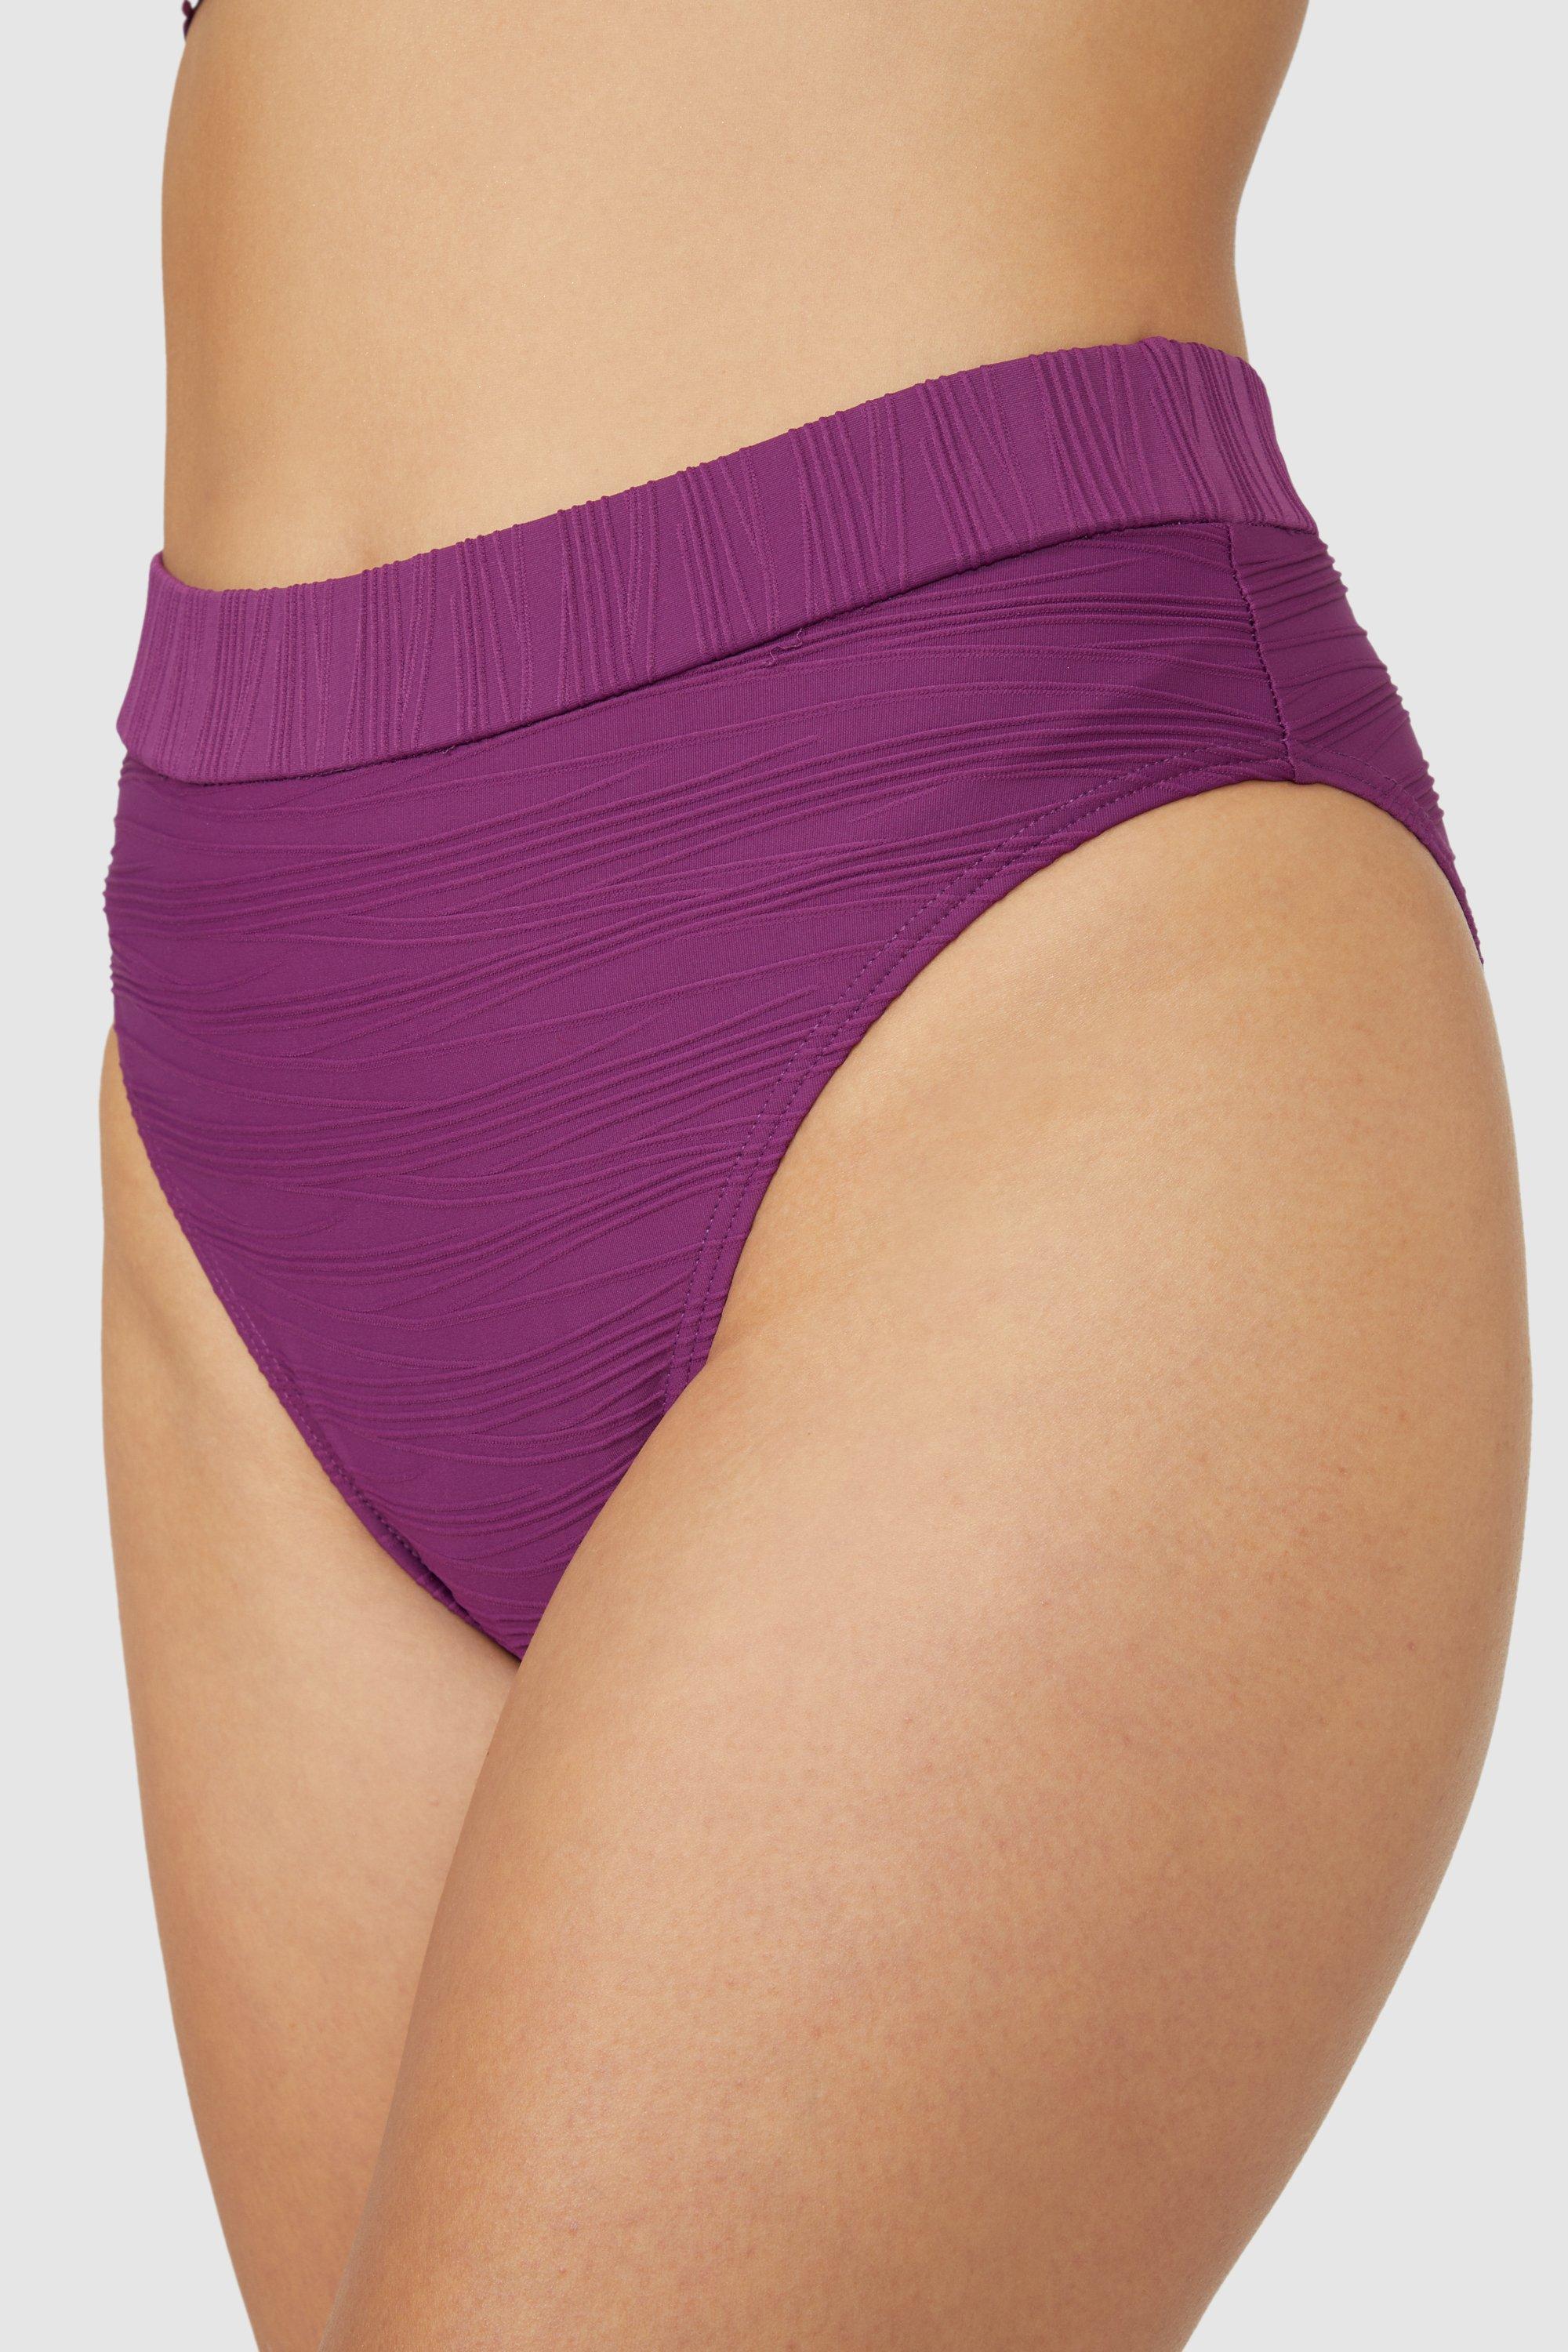 брюки женские из комбинации тканей гизела Великолепные фактурные брюки бикини со средней талией Debenhams, фиолетовый